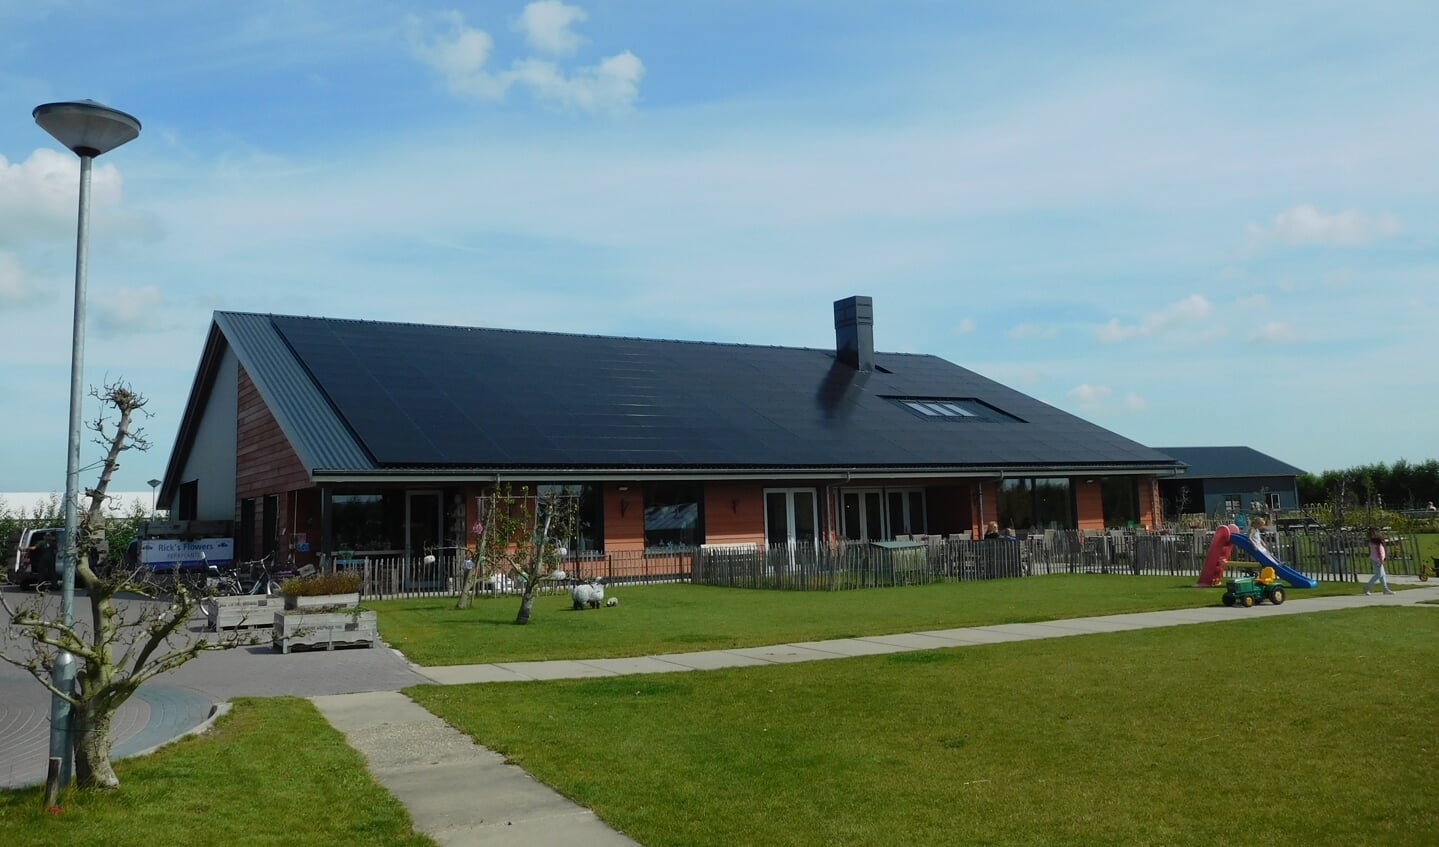 Fruitkwekerij 't Keetje in Lutjebroek biedt al plaats aan zonnepanelen.